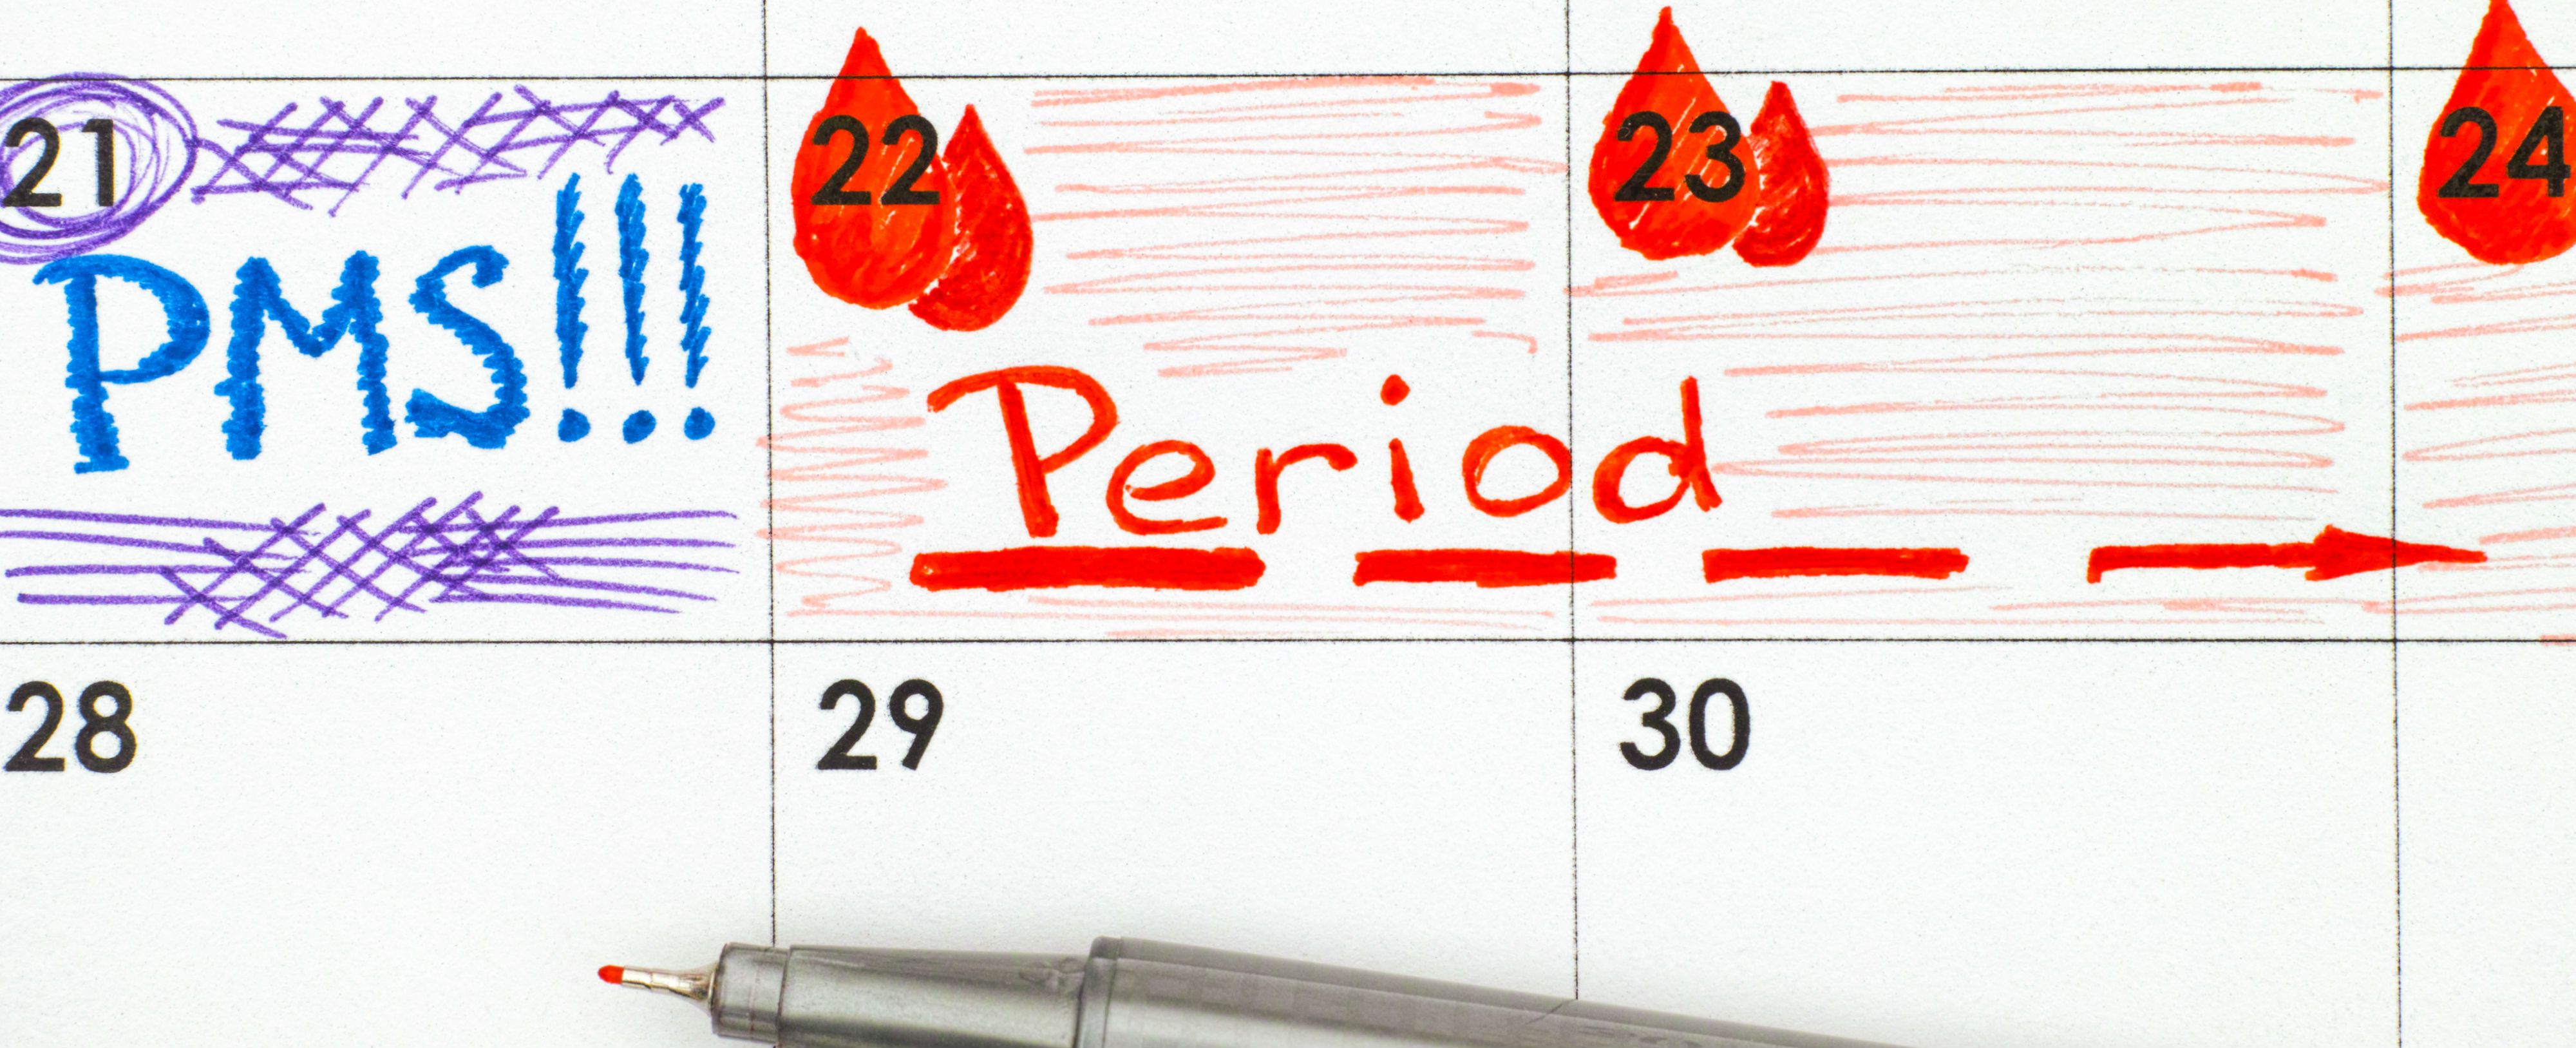 Periods calendar image